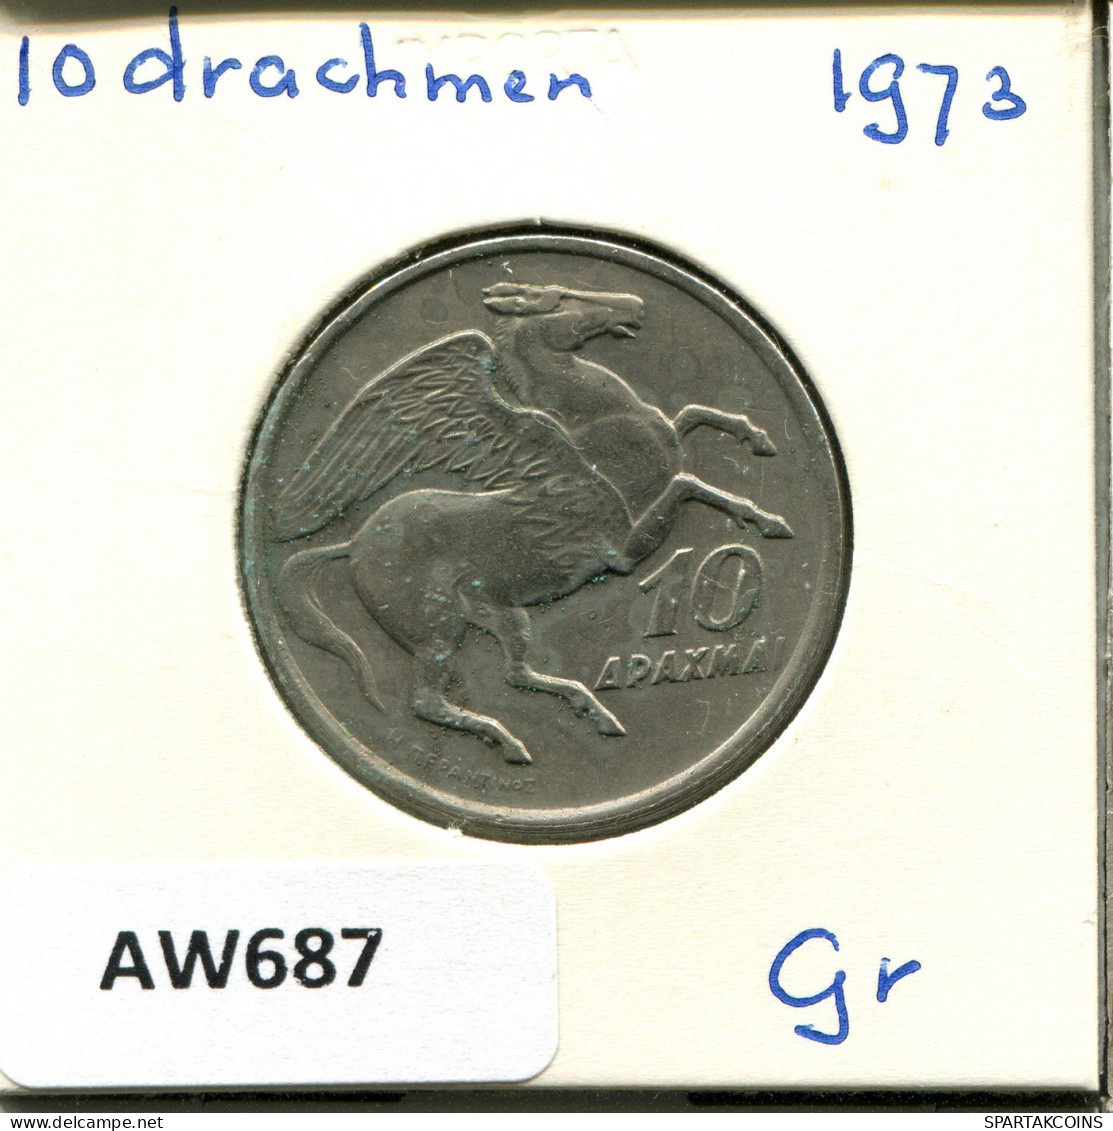 10 DRACHMES 1973 GREECE Coin #AW687.U.A - Greece